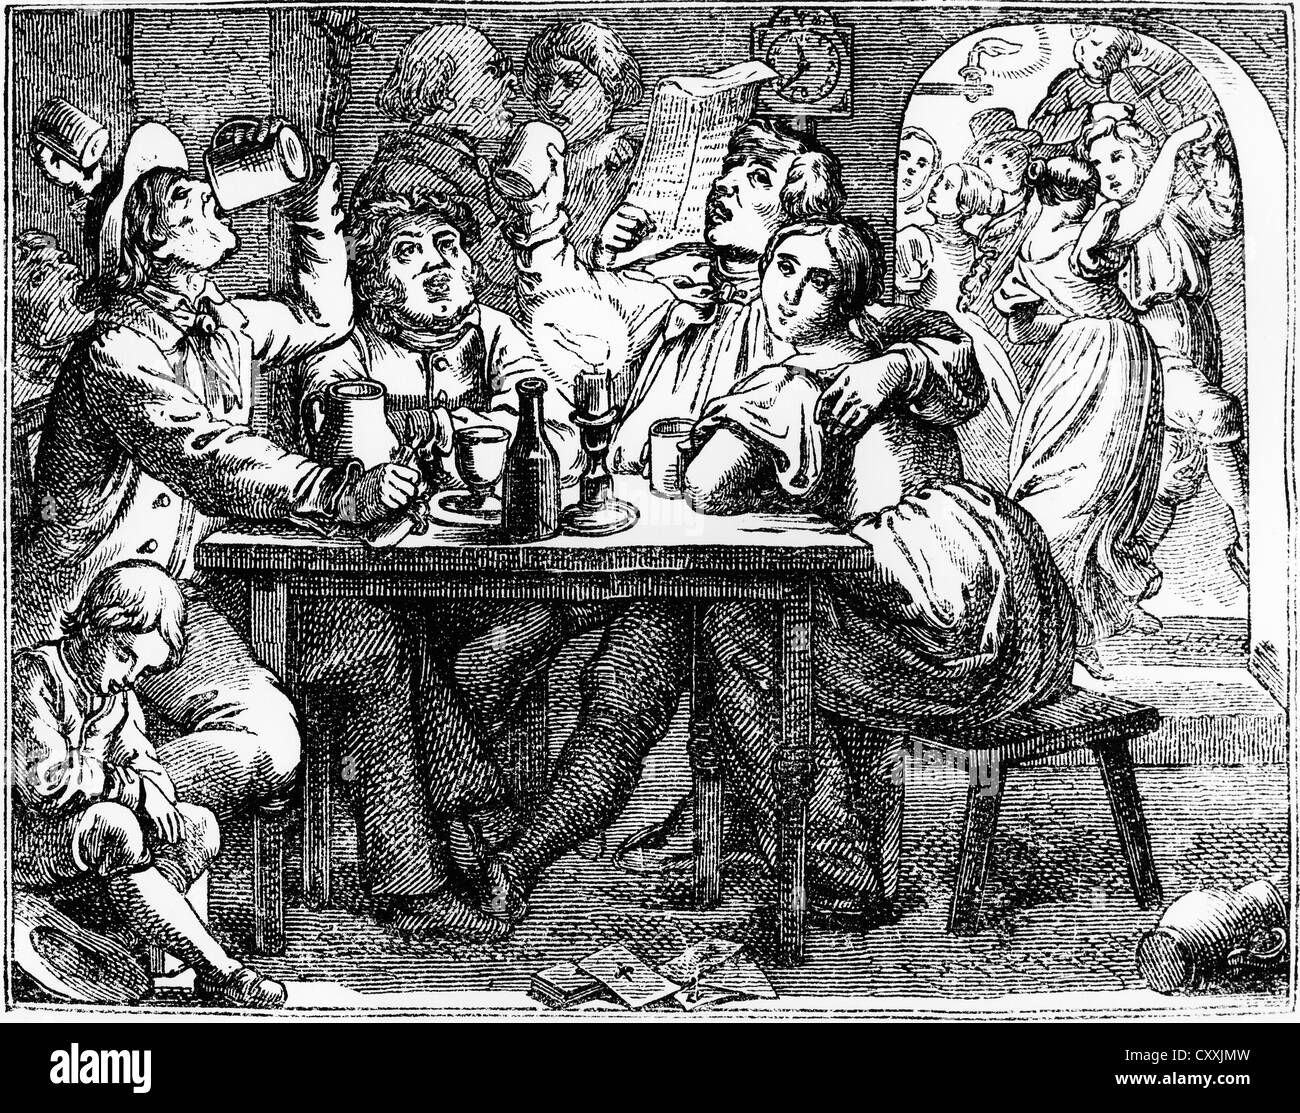 À la taverne avec du vin, de la bière et de la danse, la gravure, la fin du xixe siècle Banque D'Images